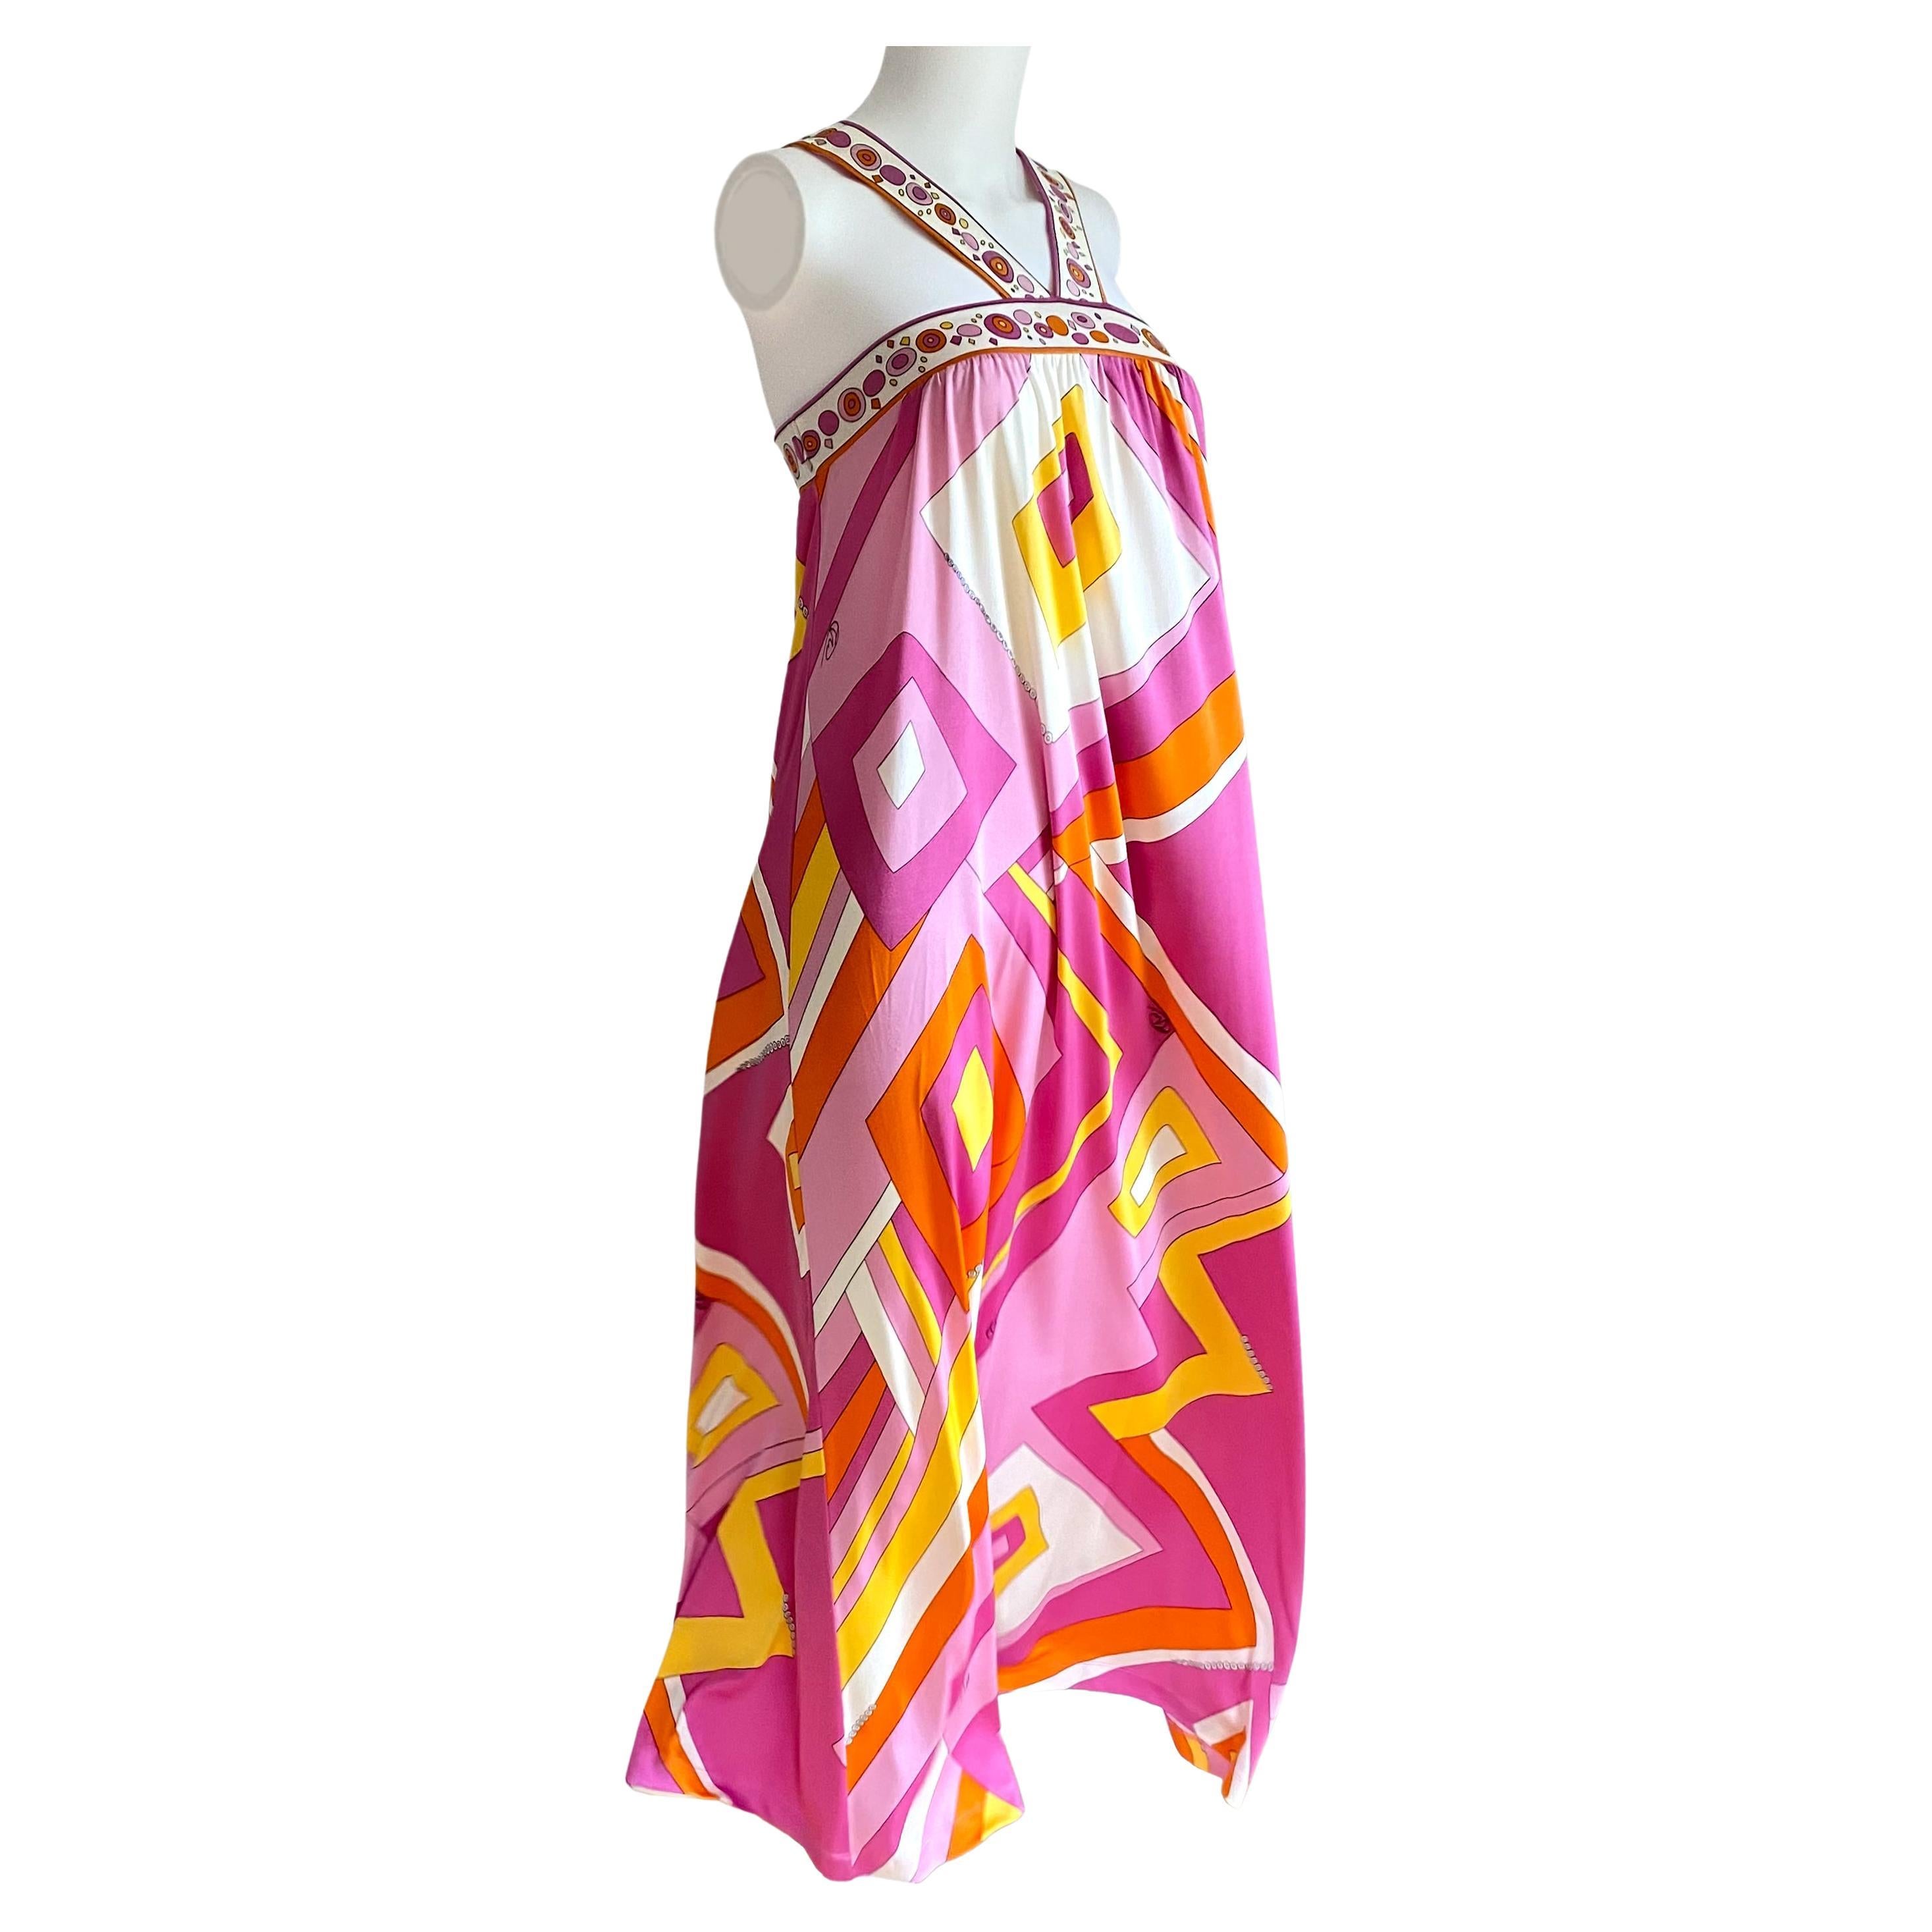 Apollina Maxi-Boho-Kleid aus Seidenjersey mit gemischtem Druck in Rosa und Gelb, neu mit Etikett 